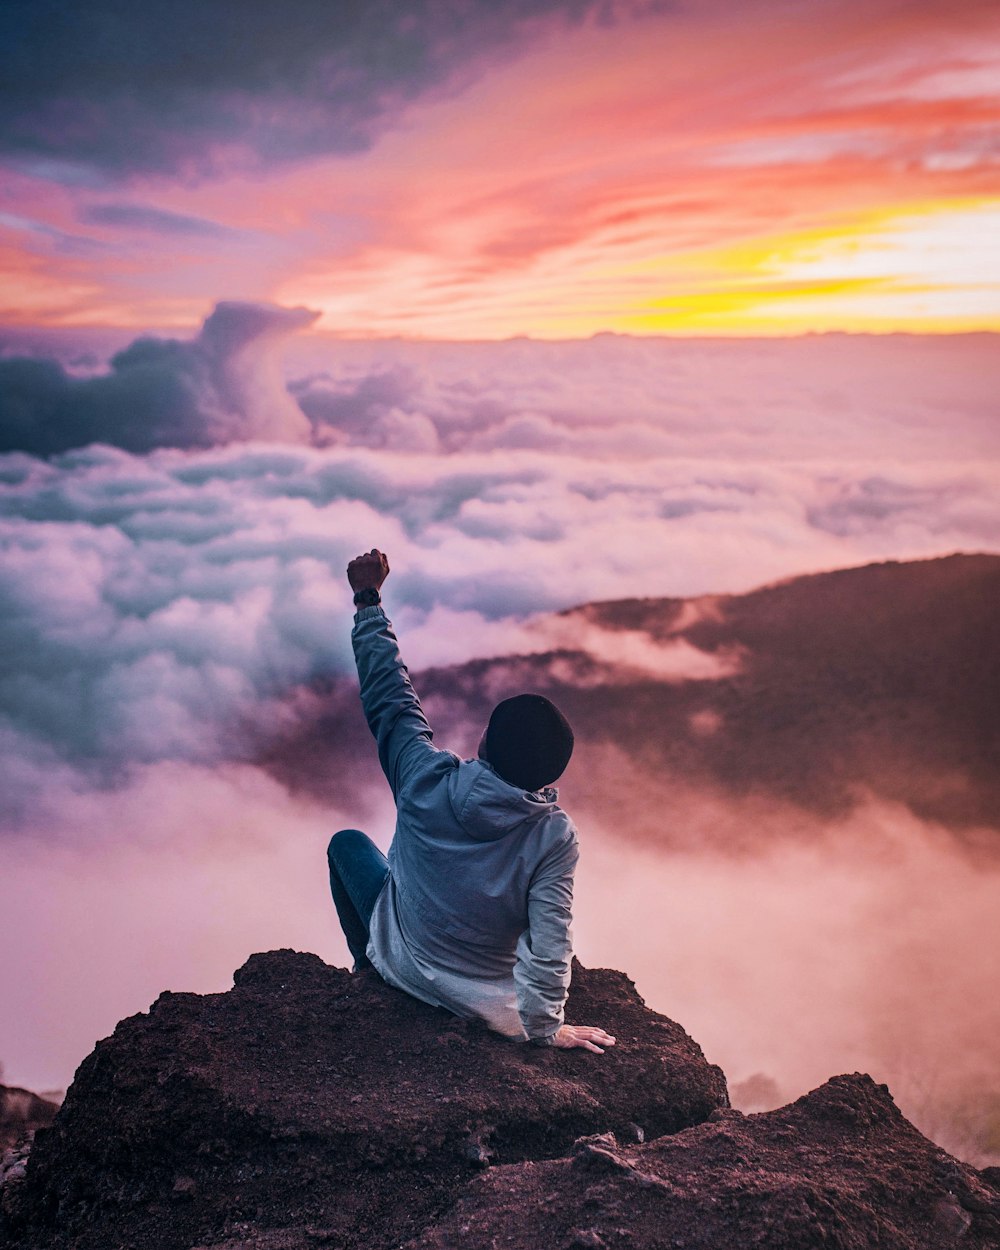 Mann sitzt auf einer Bergklippe mit Blick auf weiße Wolken, die einerseits zur goldenen Stunde aufsteigen